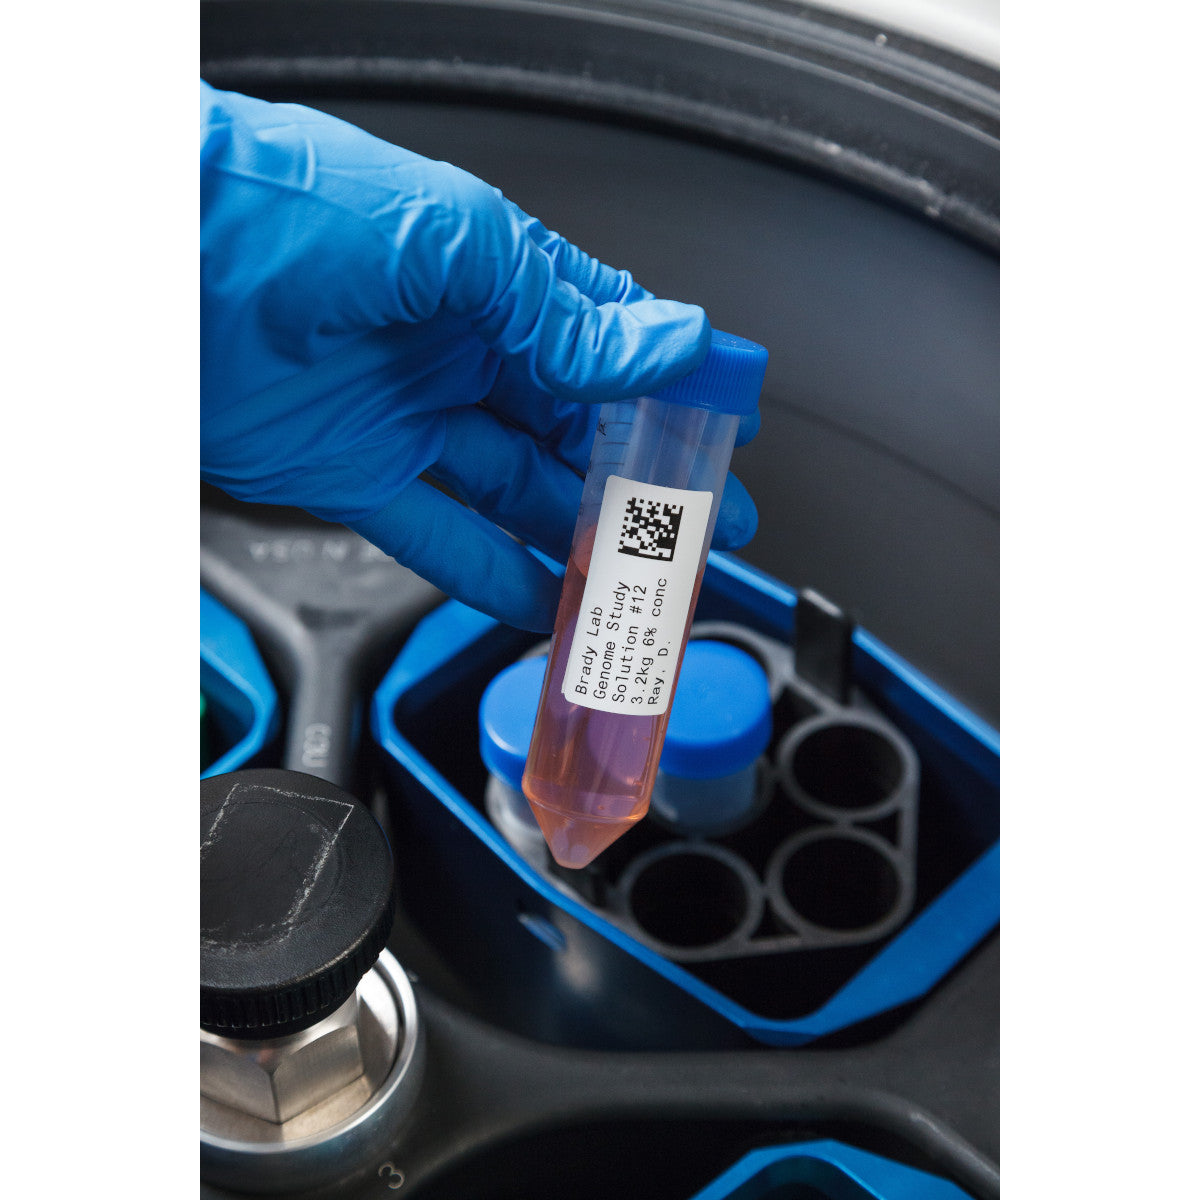 011263 - Etichette per criogenia e autoclave in poliestere core 76 mm ROTOLO DA 3000 ETICHETTE